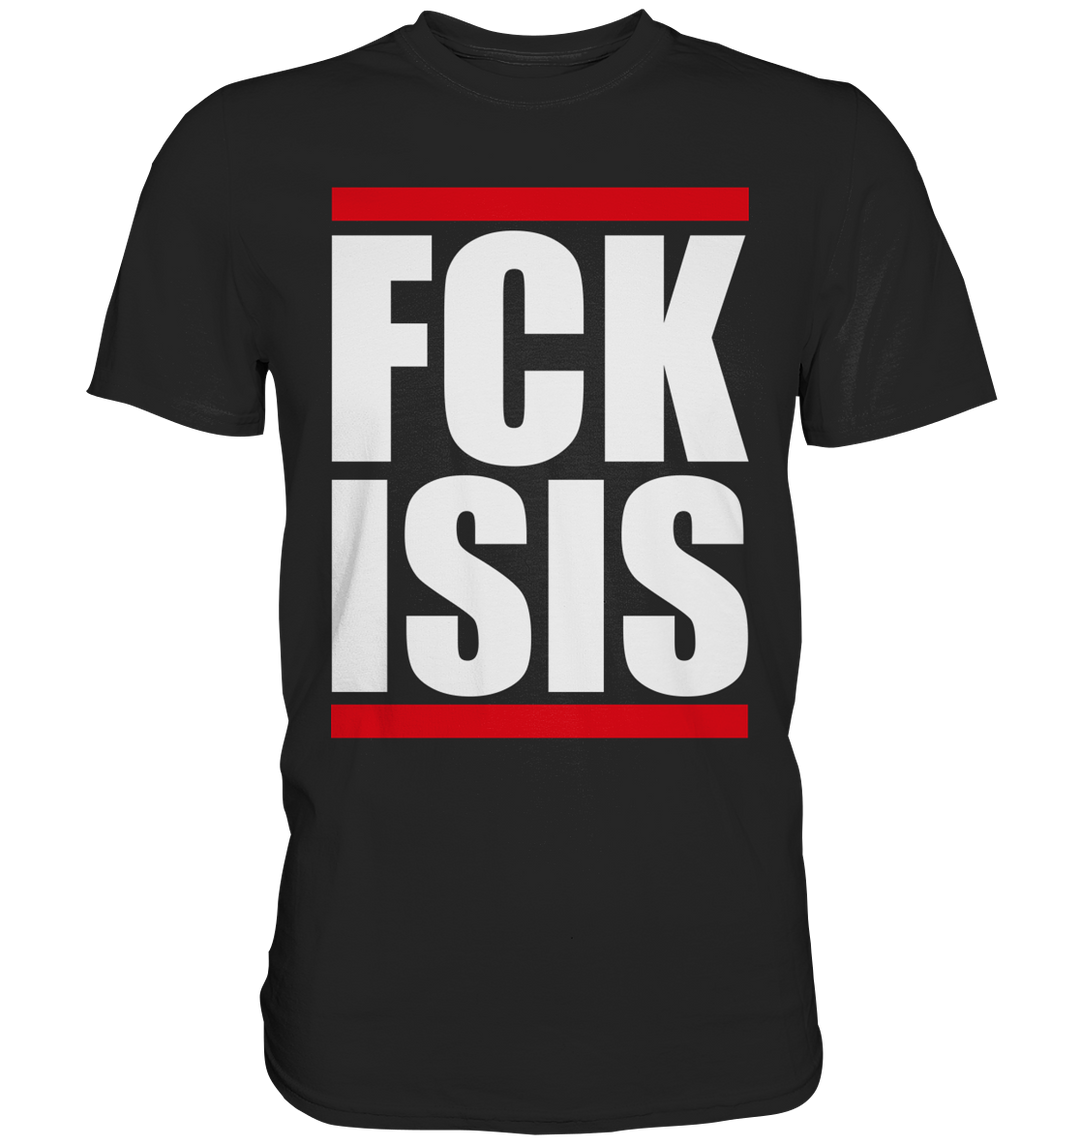 FCK ISIS - Premium Shirt